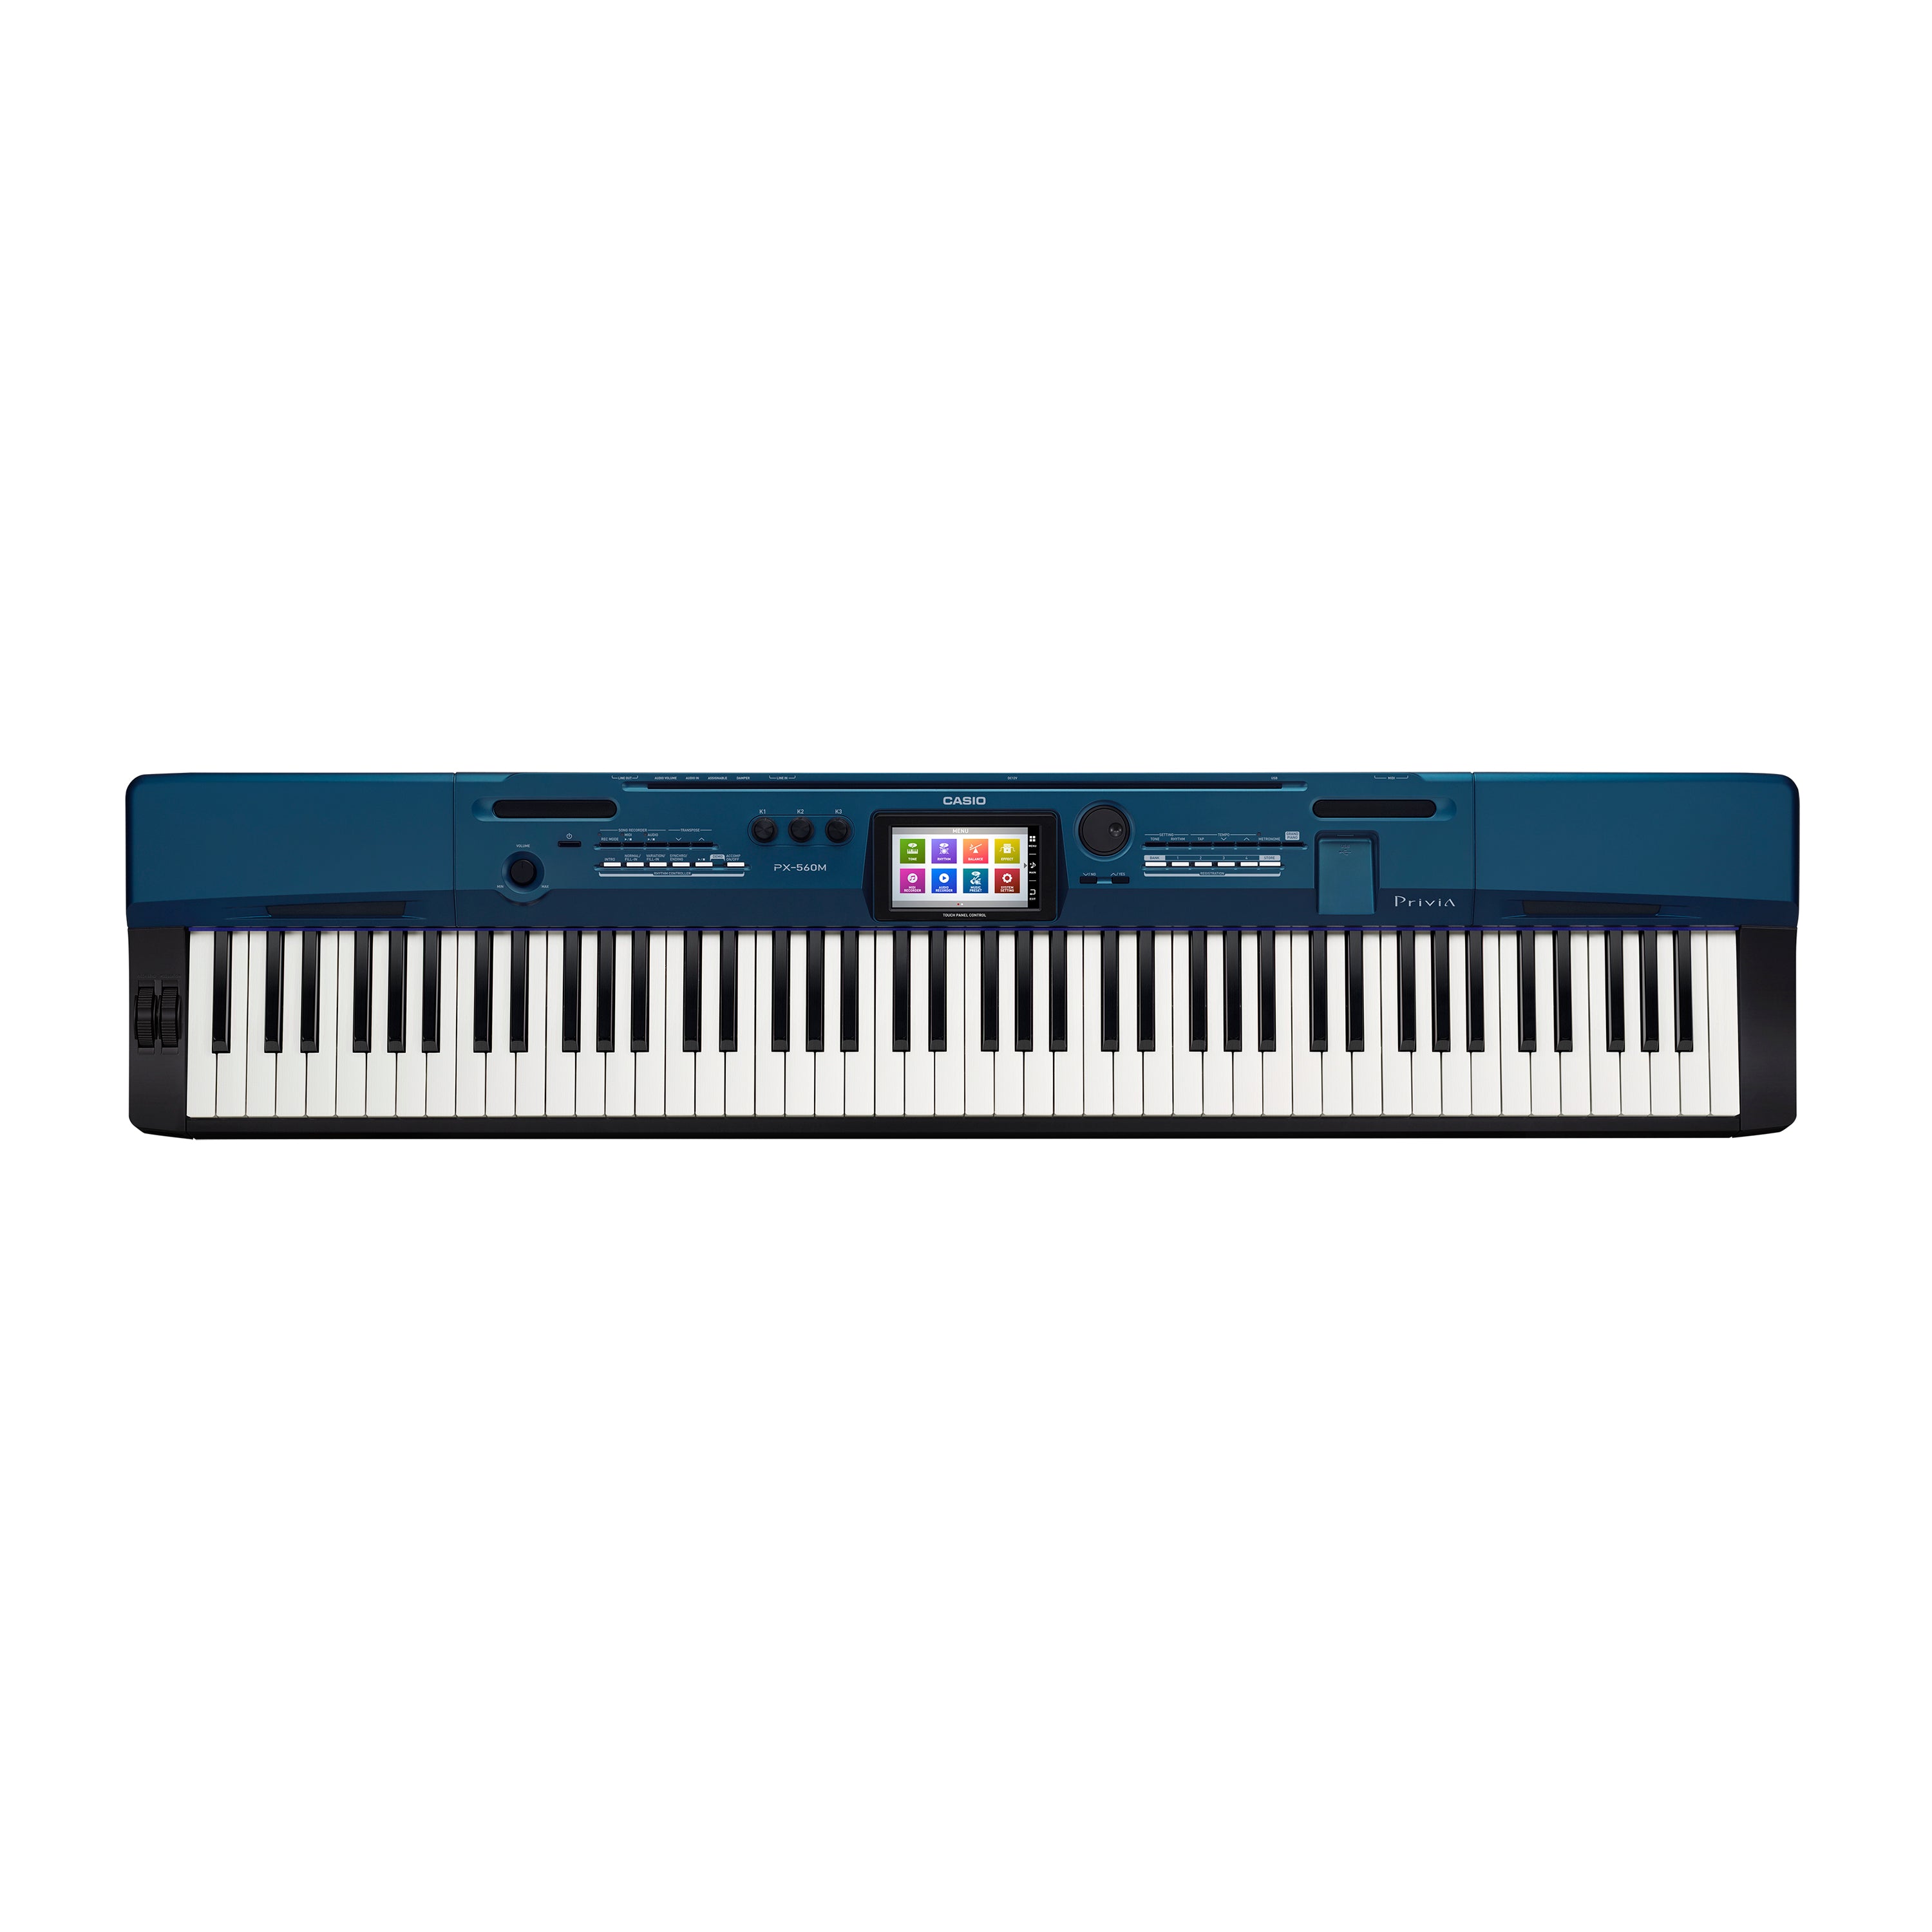 Casio Privia Pro PX-560 Digital Piano - Blue, View 1